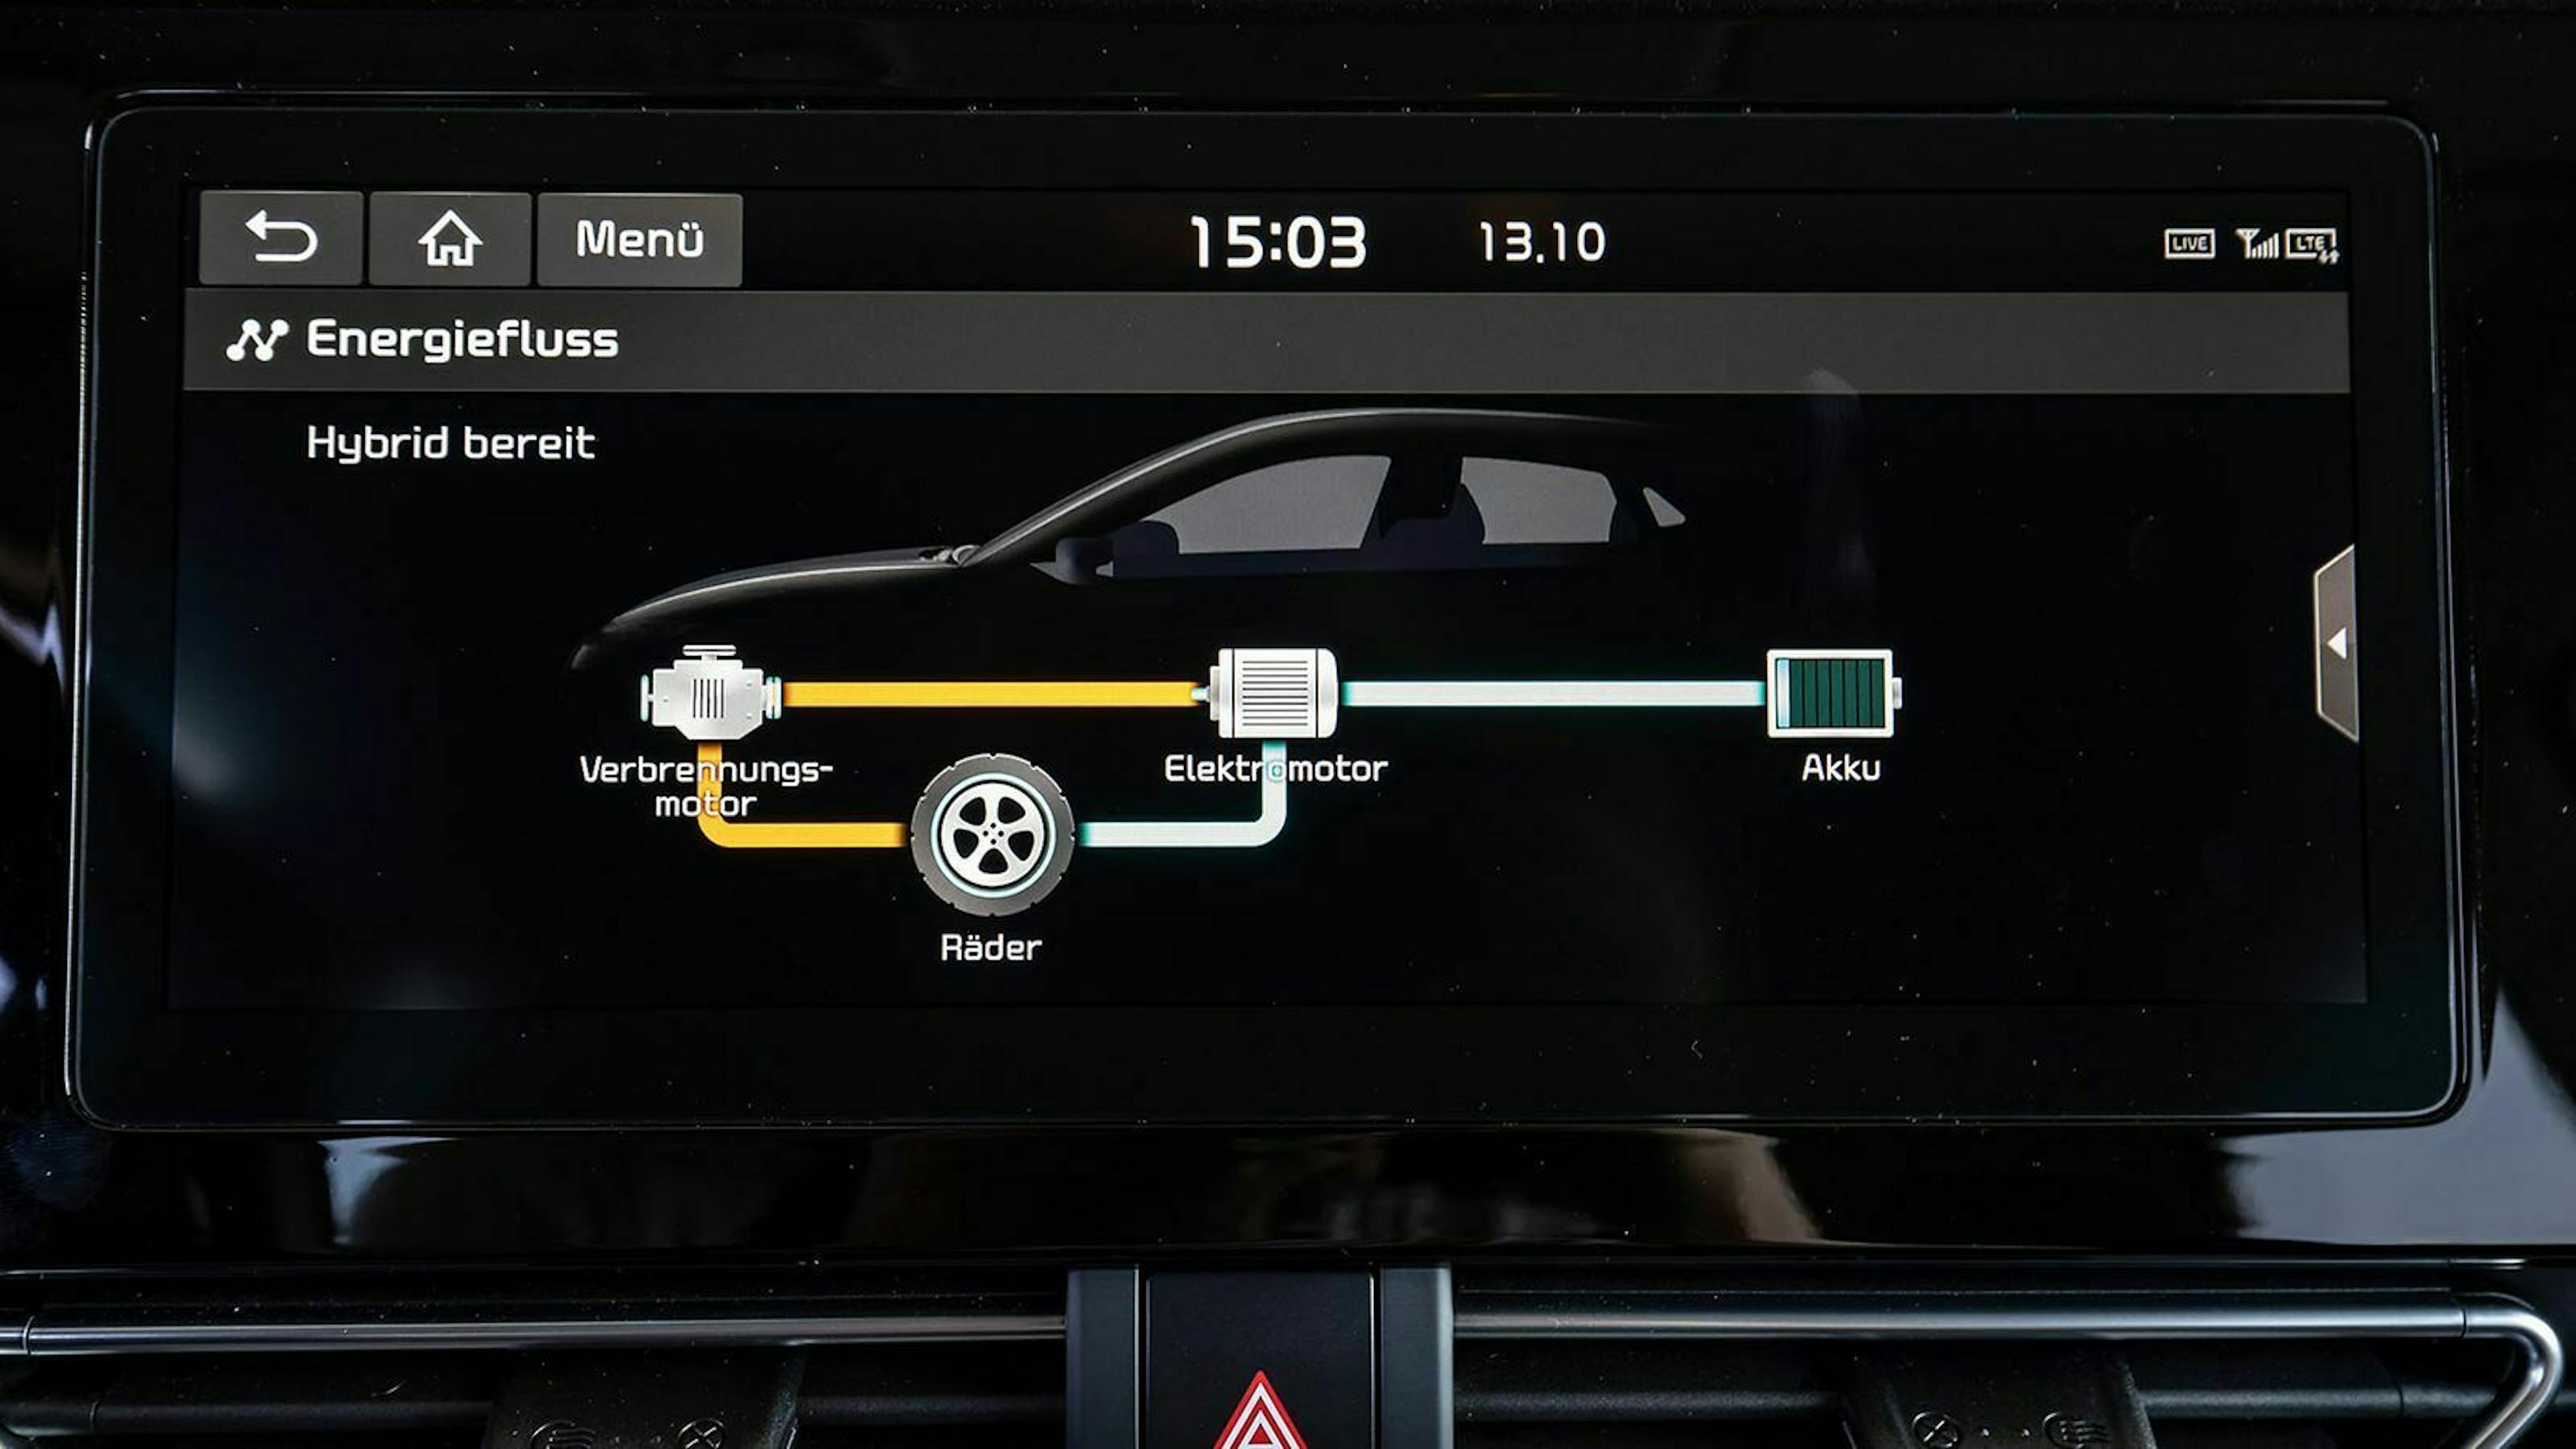 Das Infotainment-System zeigt den genauen Energiefluss zwischen dem Verbrennungsmotor, den Rädern, dem Elektromotor und dem Akku